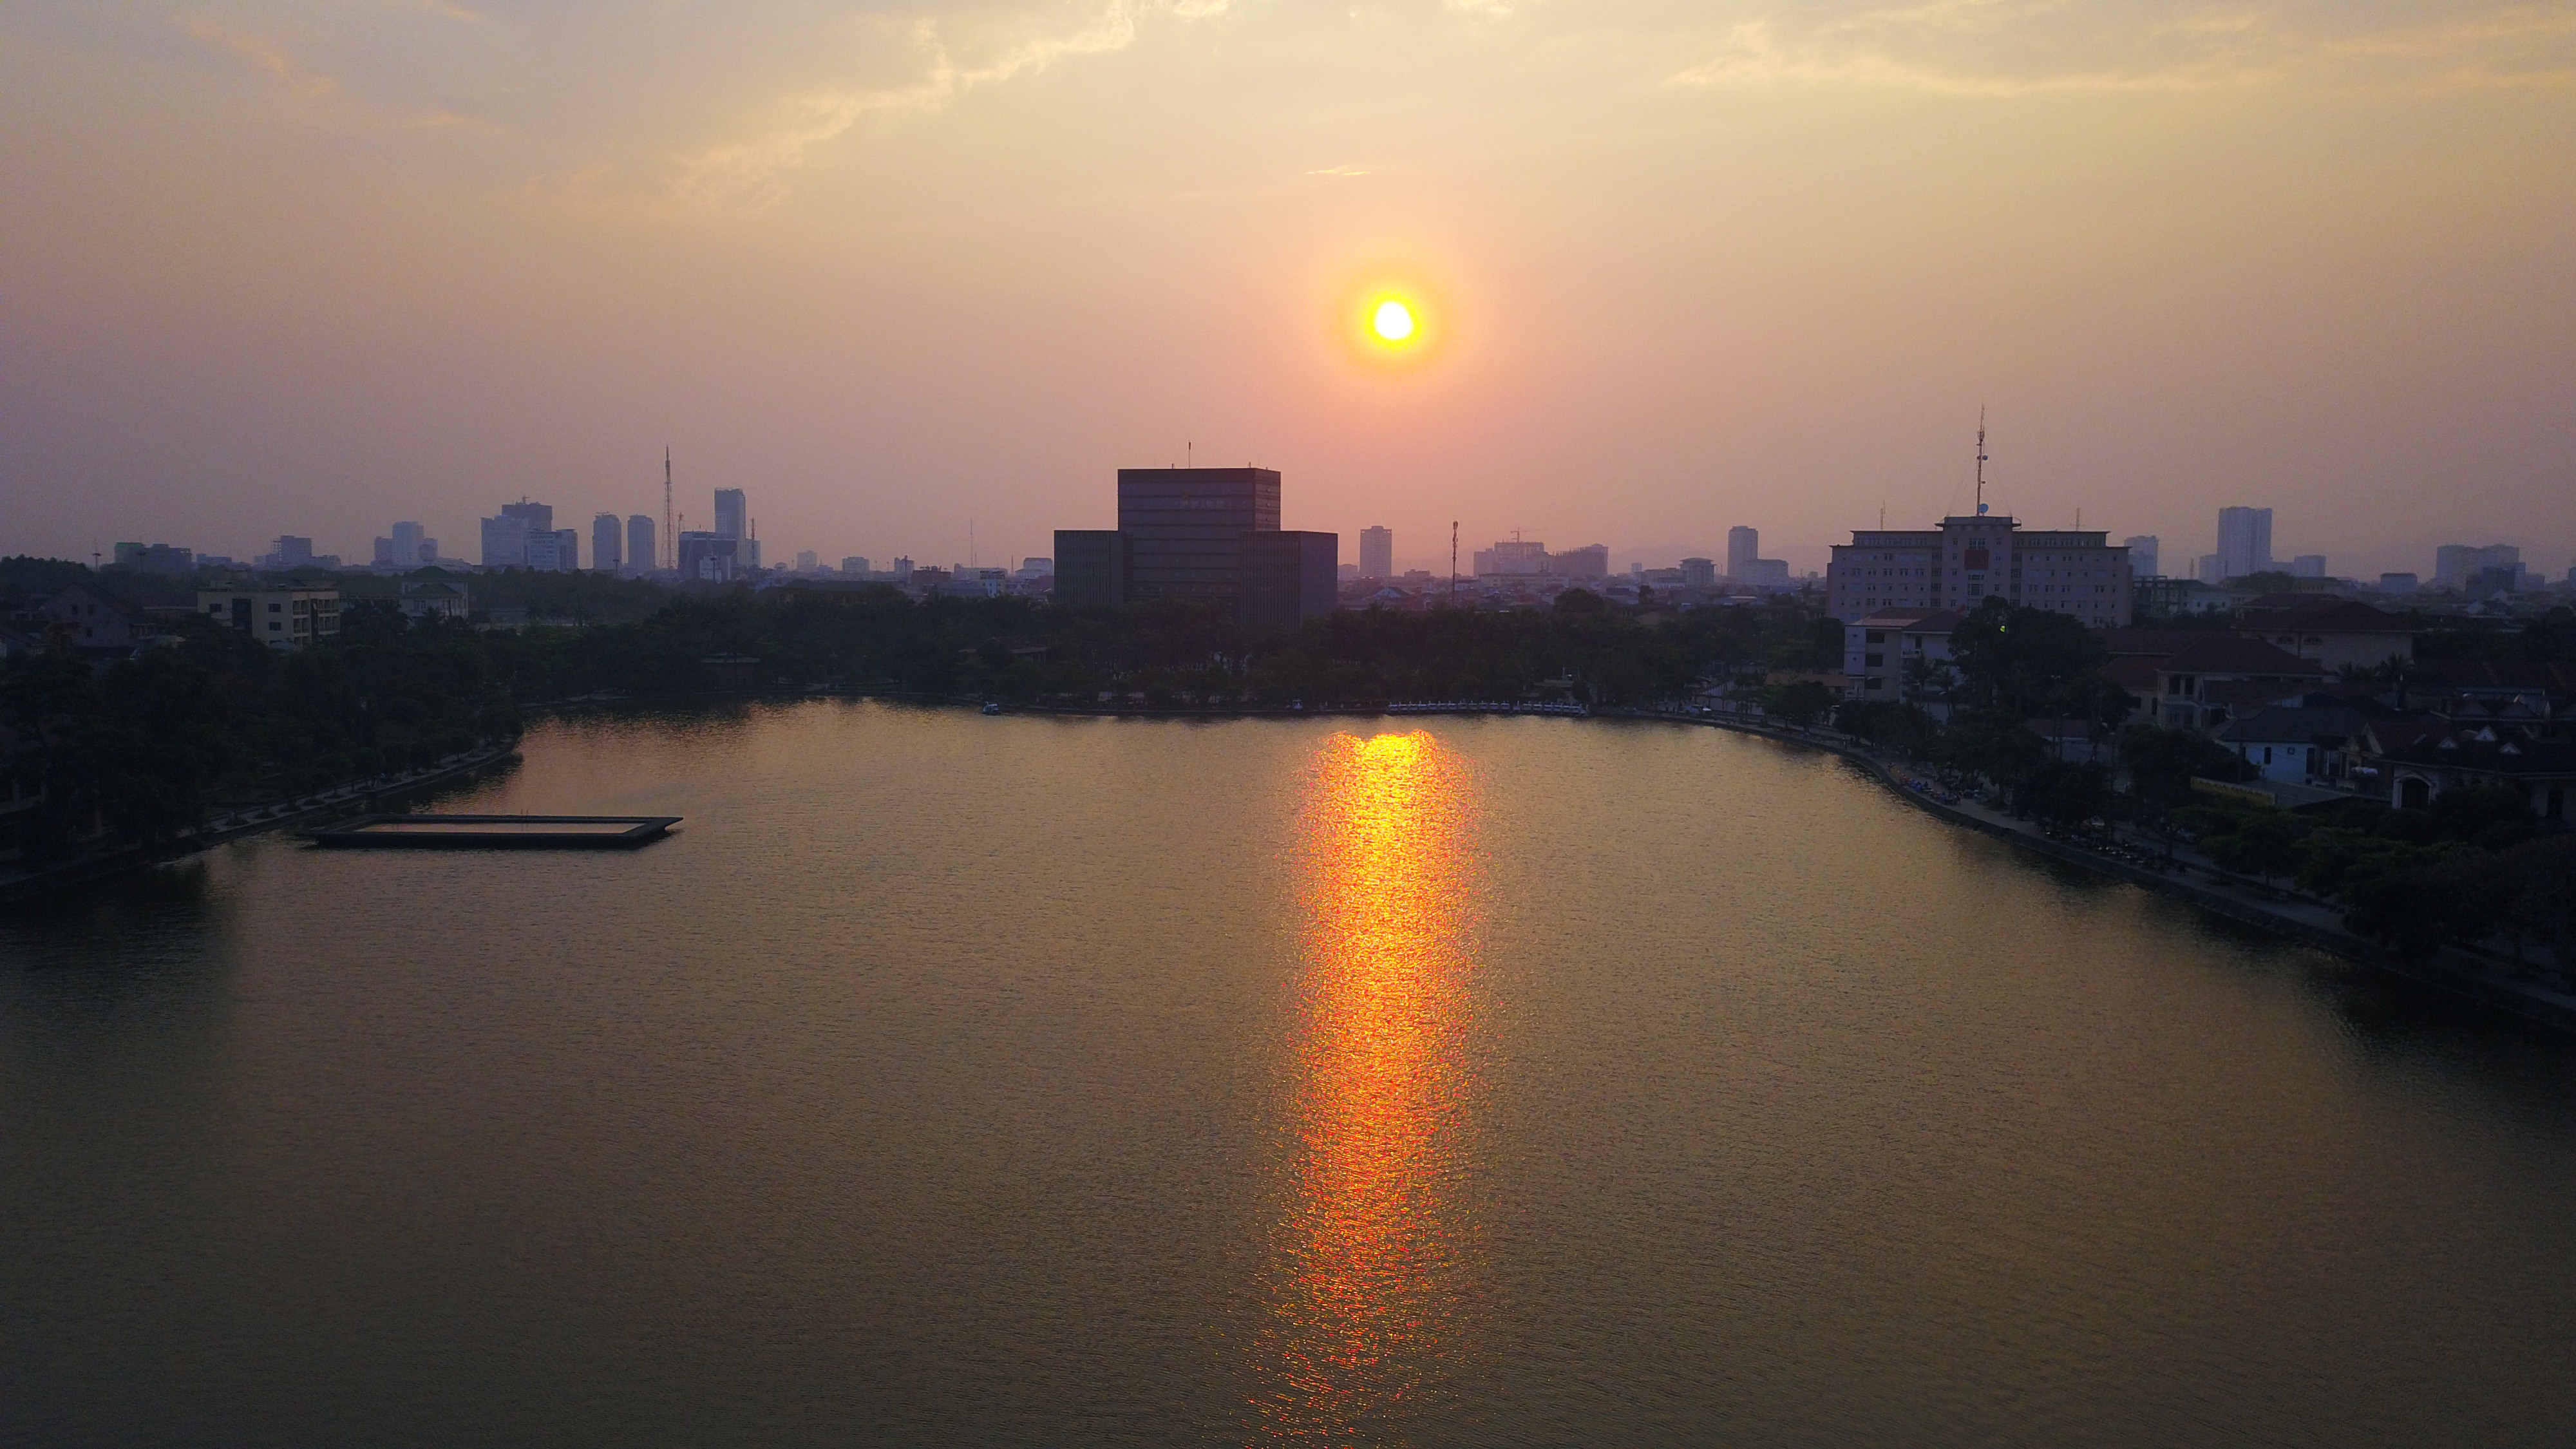 Có lẽ ít ai nhận ra khung cảnh mặt trời lặn trên hồ Goong - một địa điểm quen thuộc với người dân thành phố Vinh - lại rực rỡ đến như thế này. Ảnh: Trung Hà